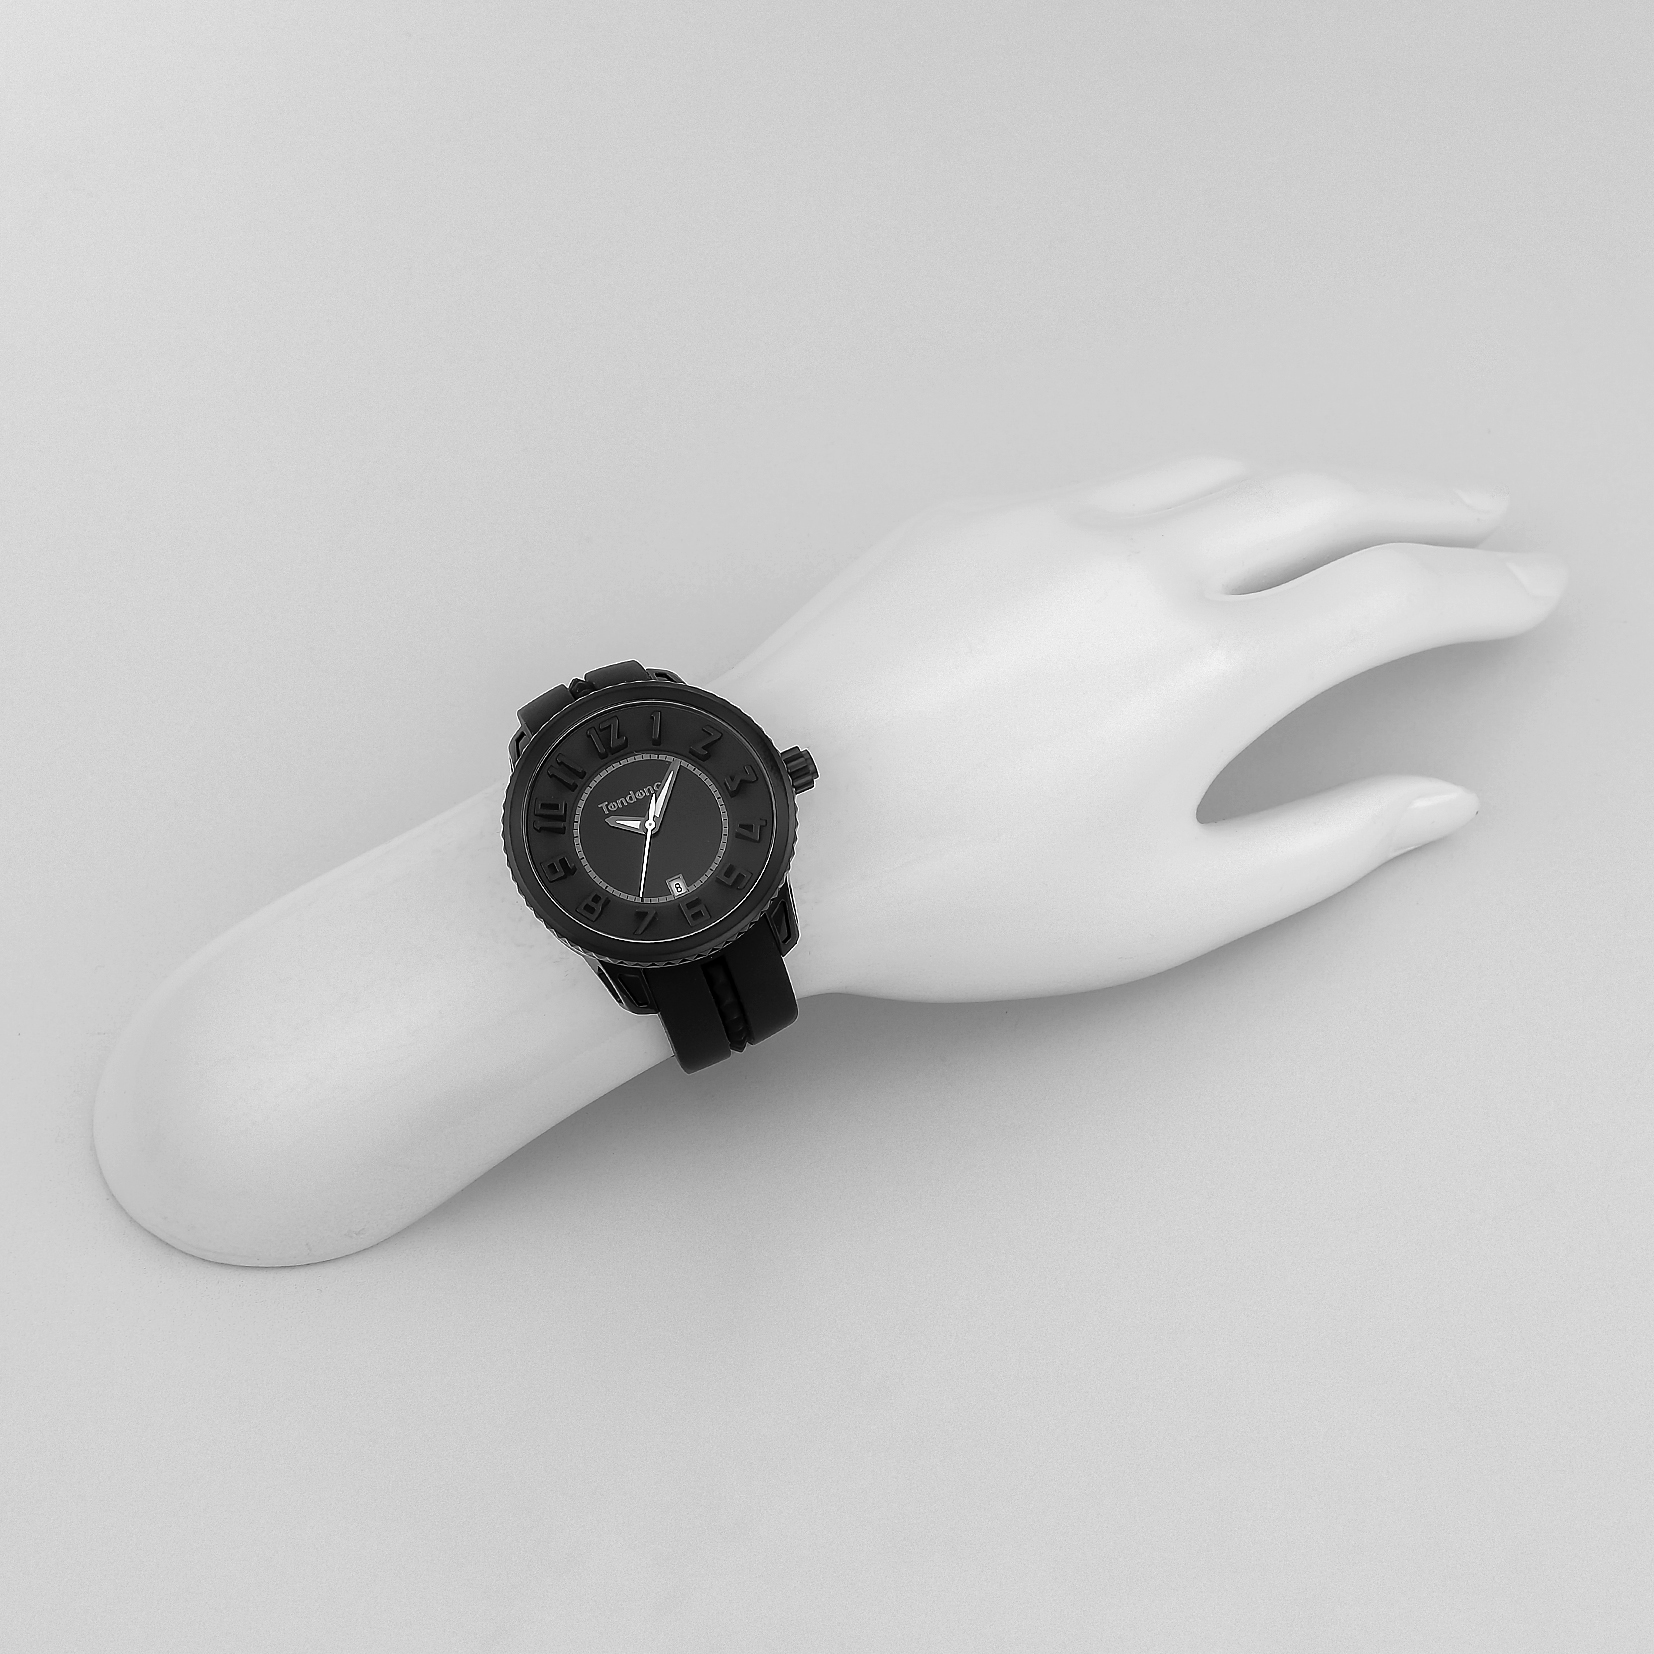 ■腕時計 ガリバーミディアム ユニセックス ブラック